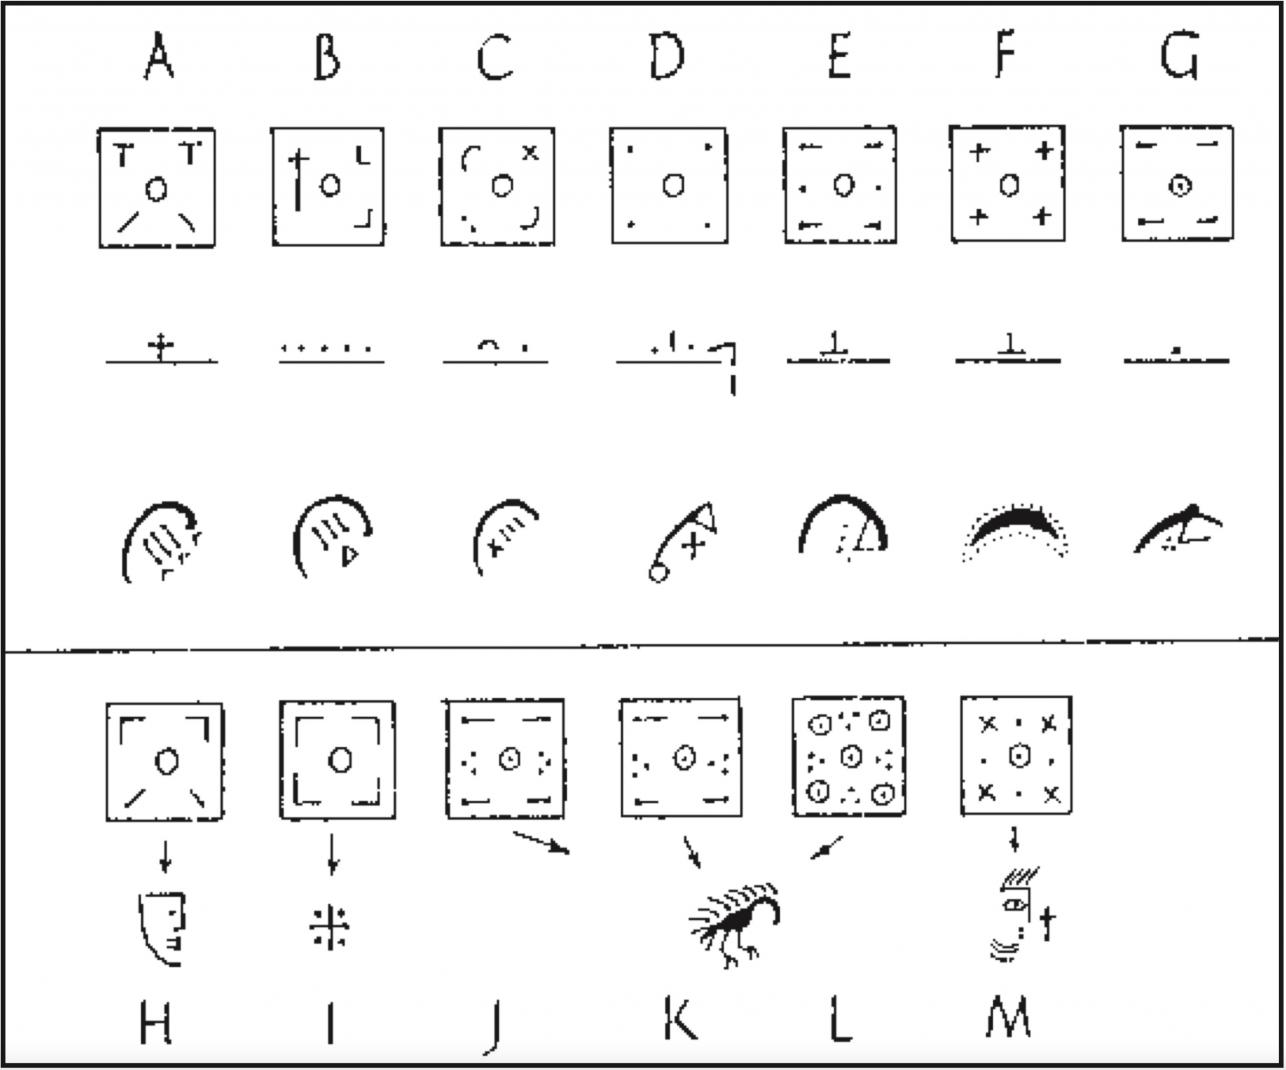 Diagram van de belangrijkste variëteiten van de Stekelvarkenserie, indeling volgens Michael Metcalf in 1966. Belangrijkste onderscheid is de keerzijde (boven). De voorzijde is vaak minder eenduidig te benoemen.